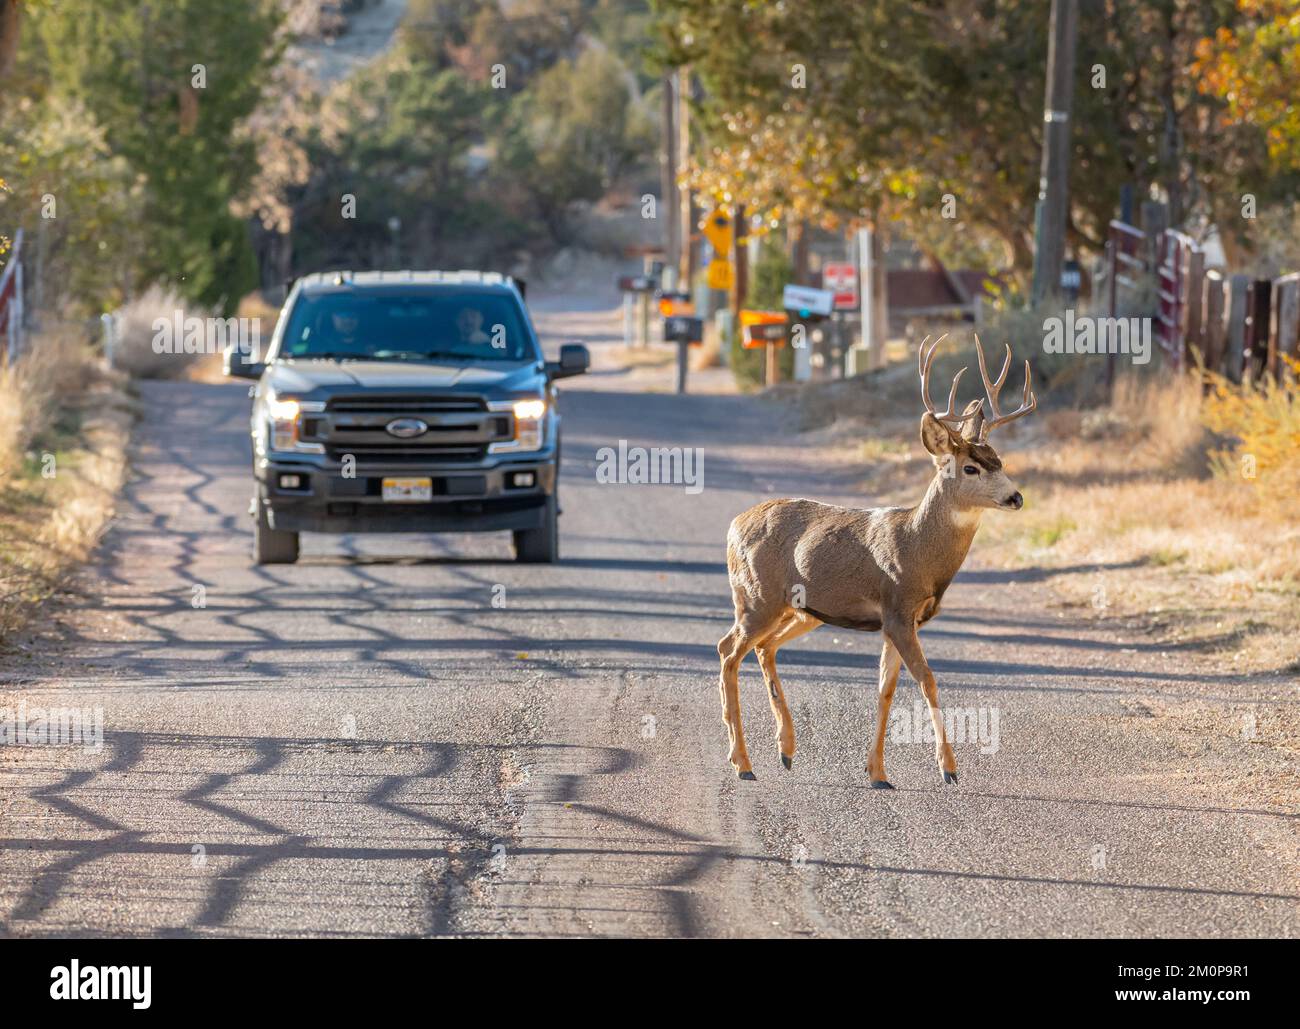 Ein junger Mann, der auf der Suche nach Does umherwandert, überquert die Straße vor einem Pickup-Truck, direkt außerhalb von Canon City, Colorado. Stockfoto